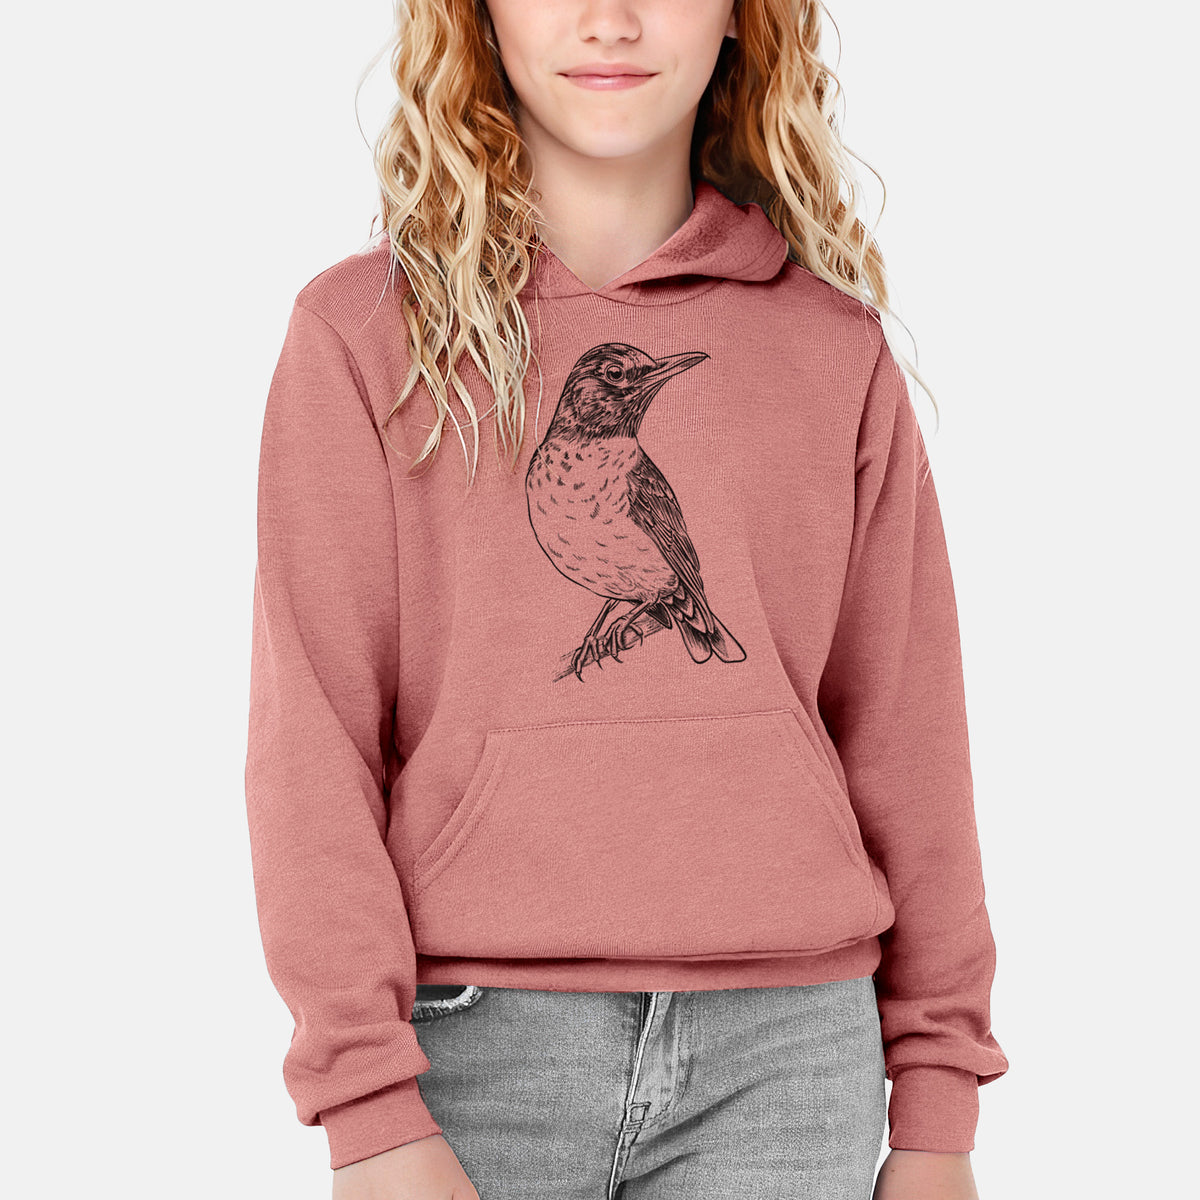 American Robin - Turdus migratorius - Youth Hoodie Sweatshirt